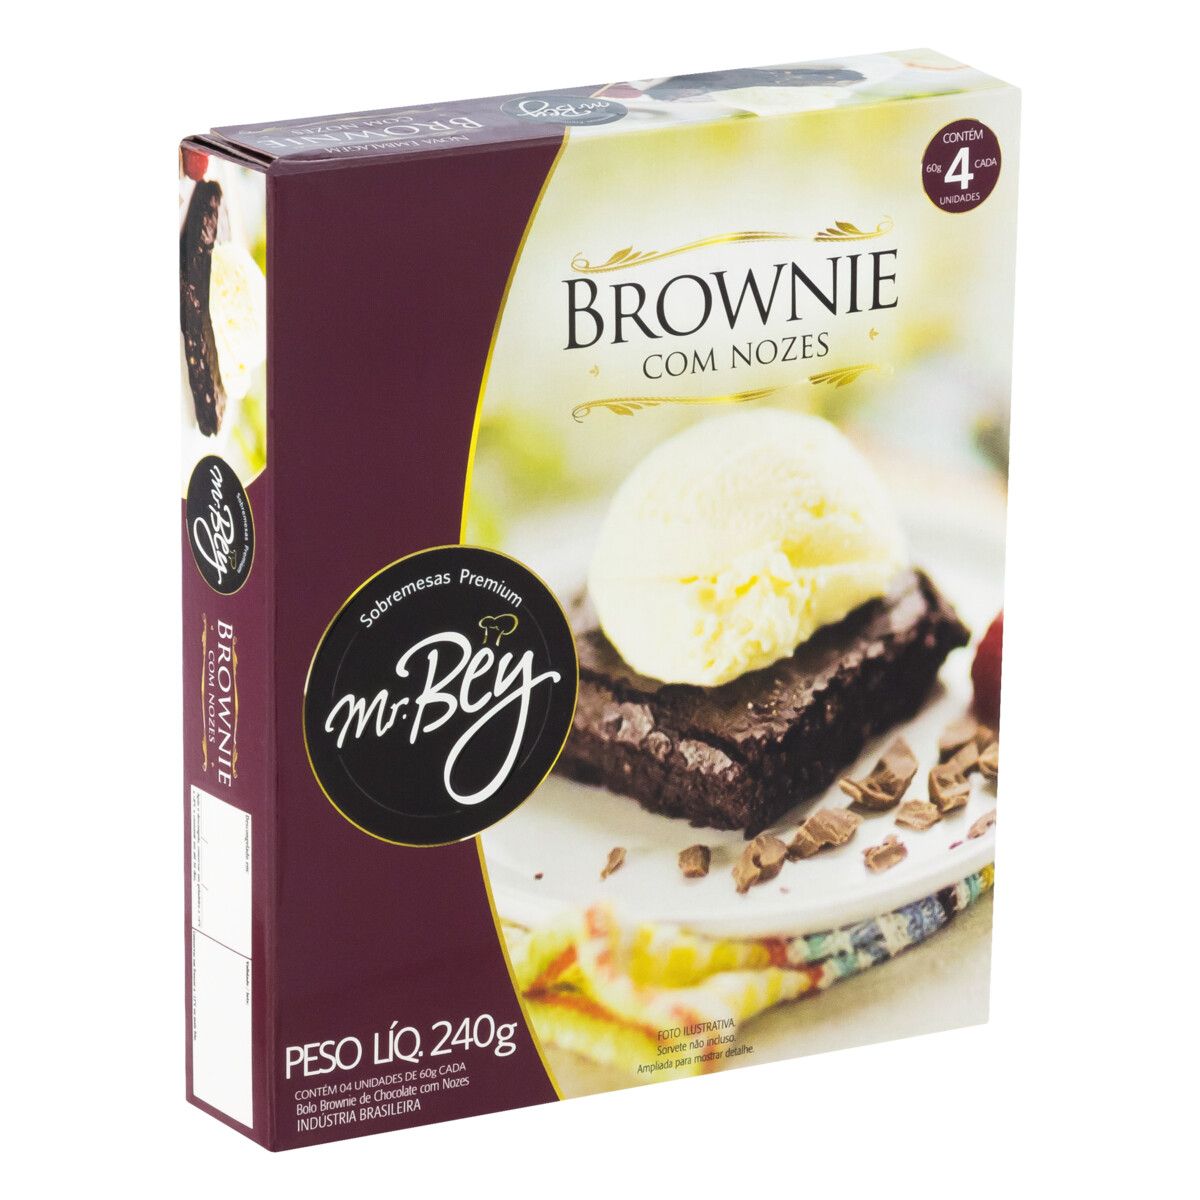 Brownie Chocolate com Nozes Mr. Bey Sobremesas Premium Caixa 240g 4 Unidades image number 3